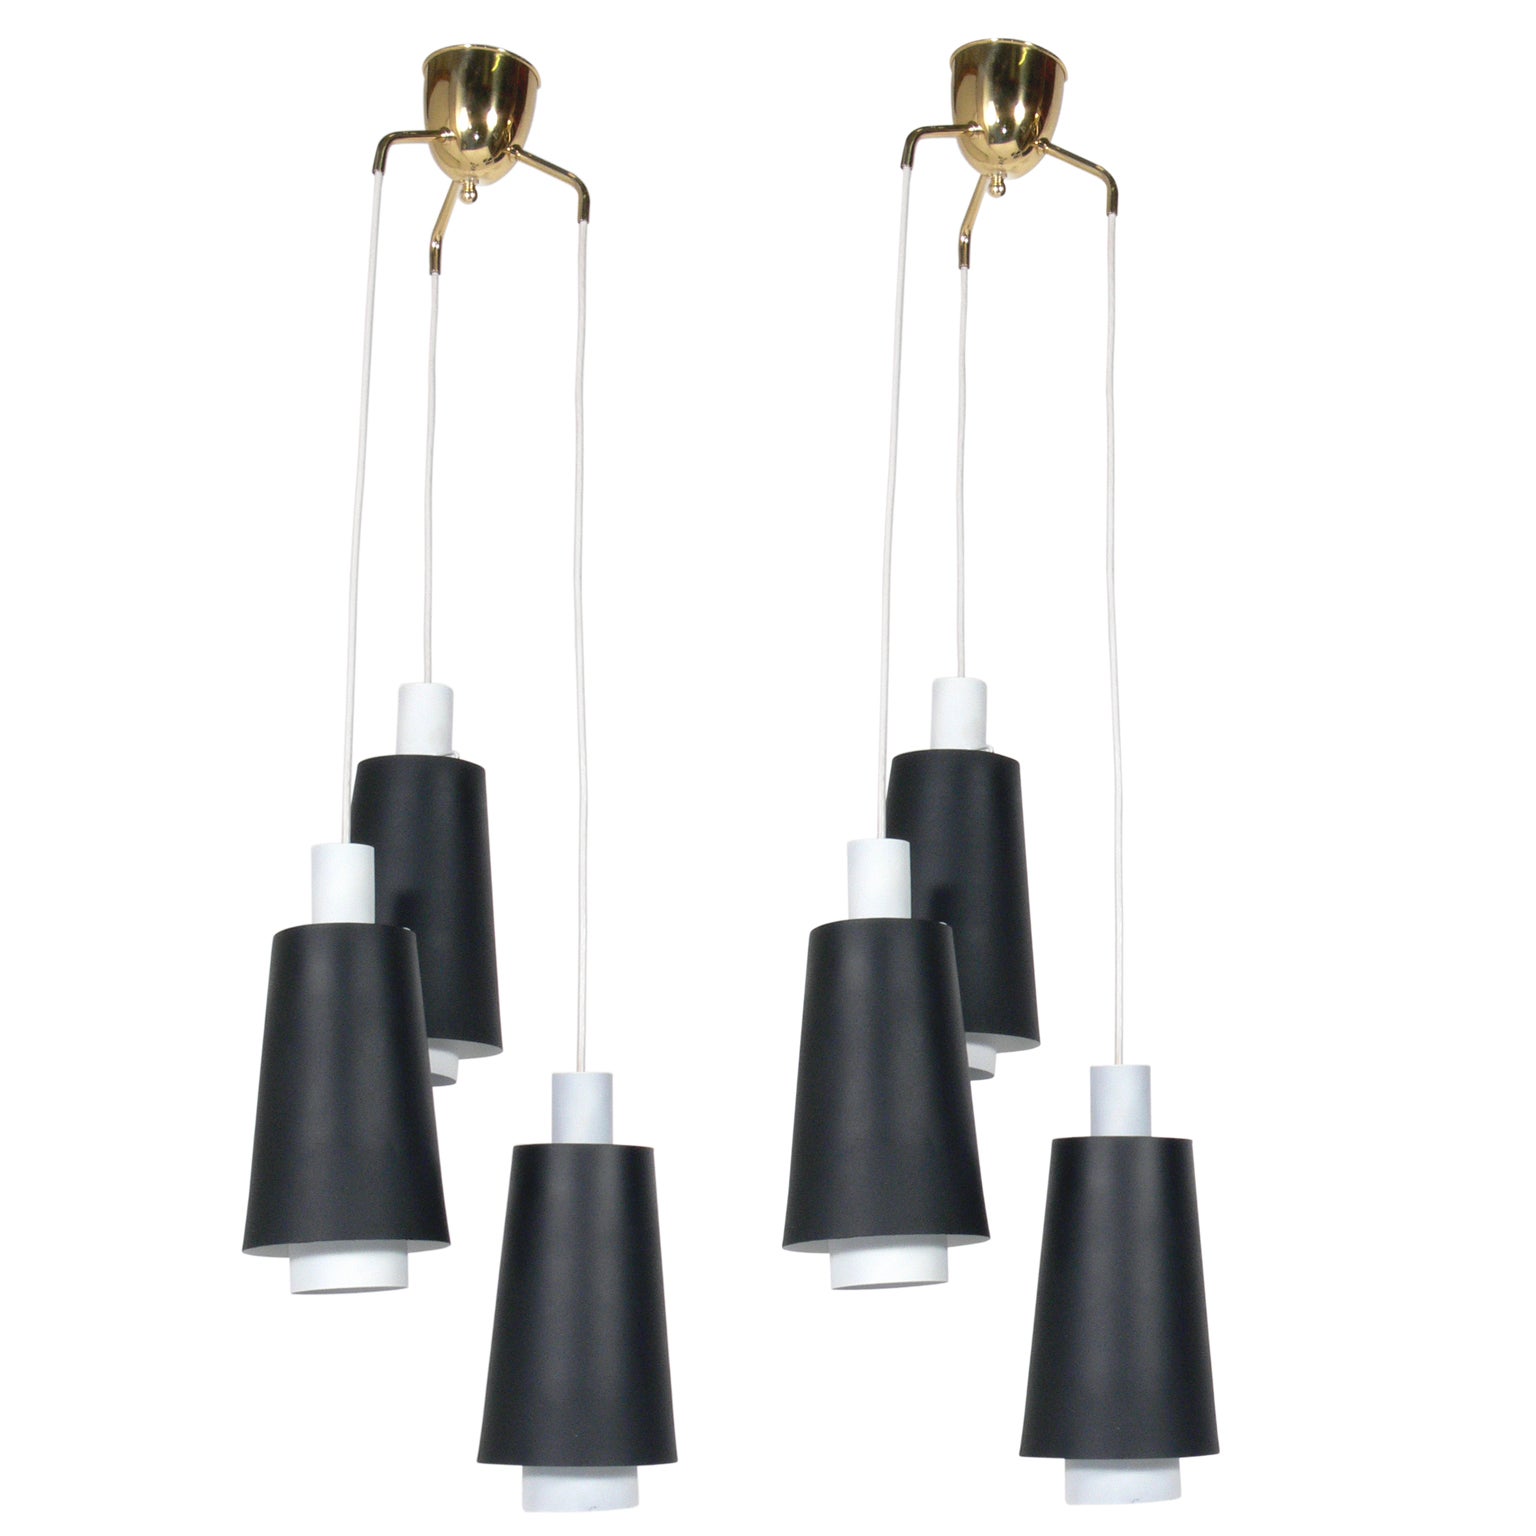 Pair of Danish Modern Pendant Light Fixtures or Chandeliers